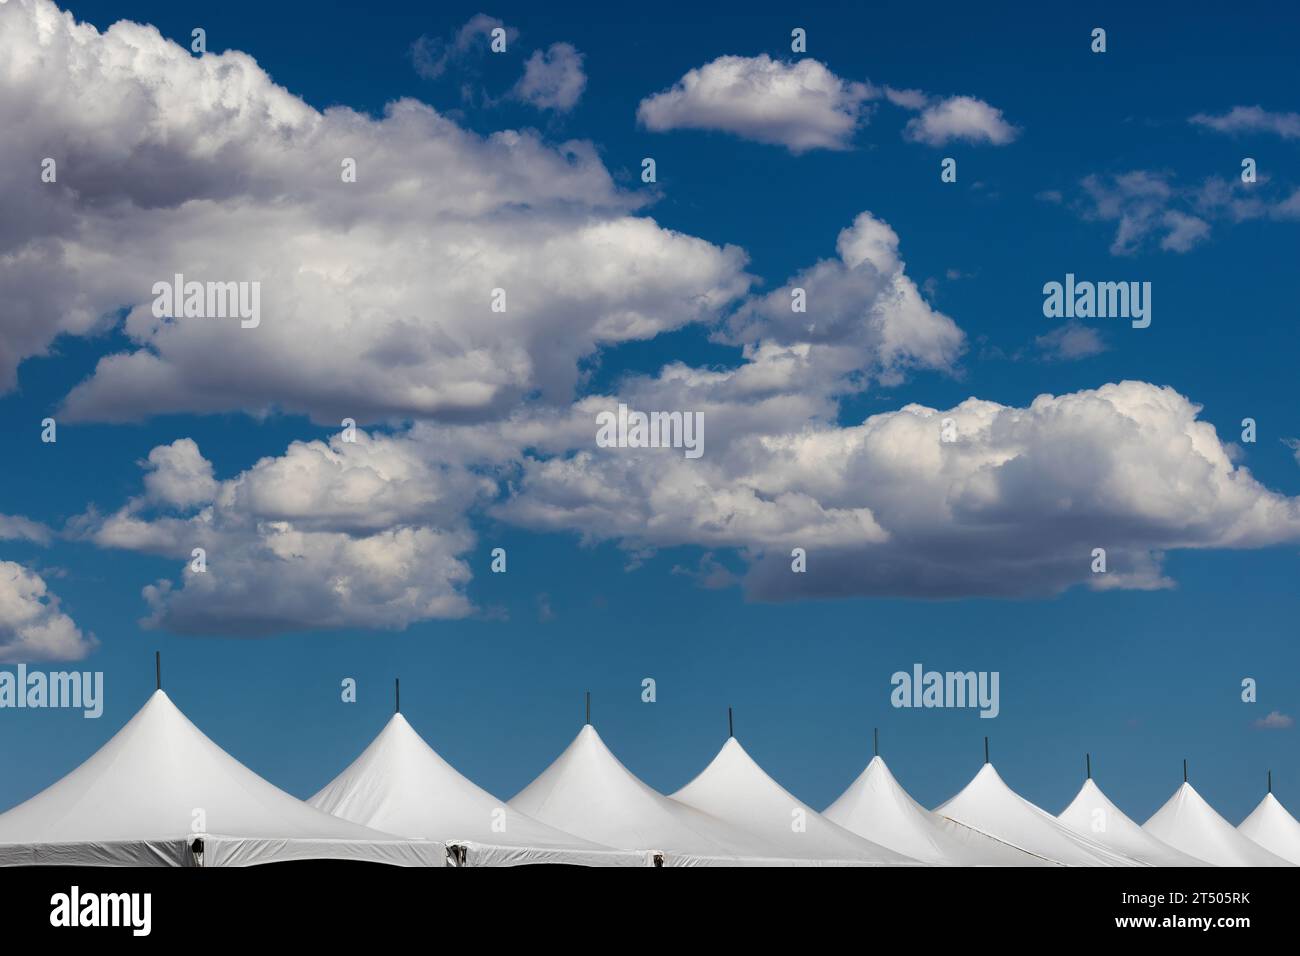 Grandi nuvole bianche e soffici in un cielo blu sopra una linea di cime bianche della tenda. Foto Stock